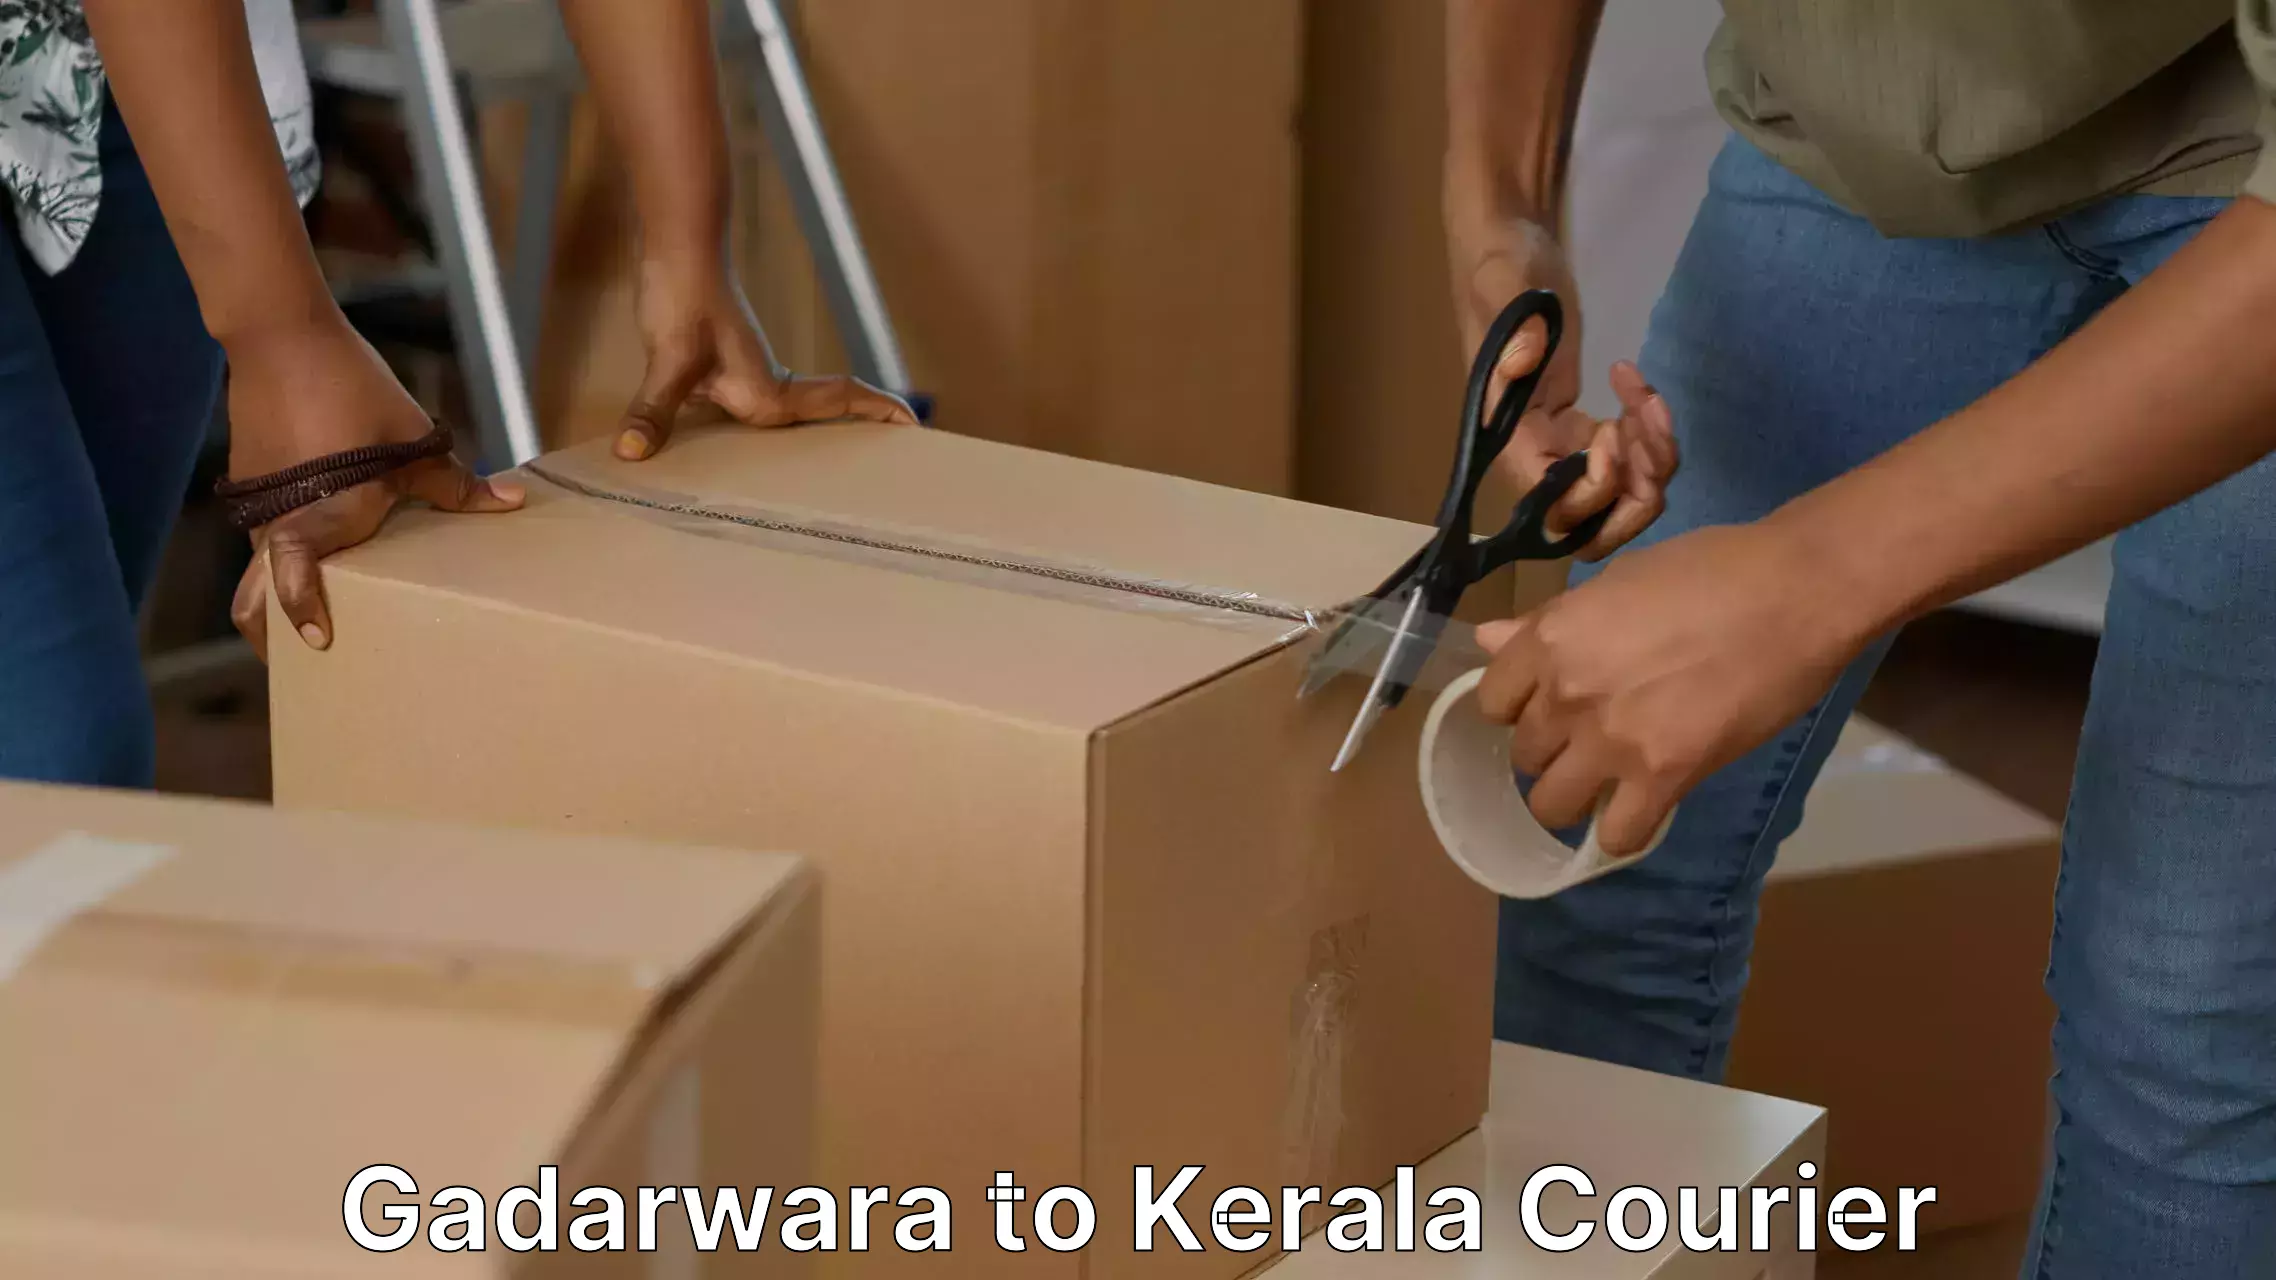 Moving and packing experts Gadarwara to Kozhikode